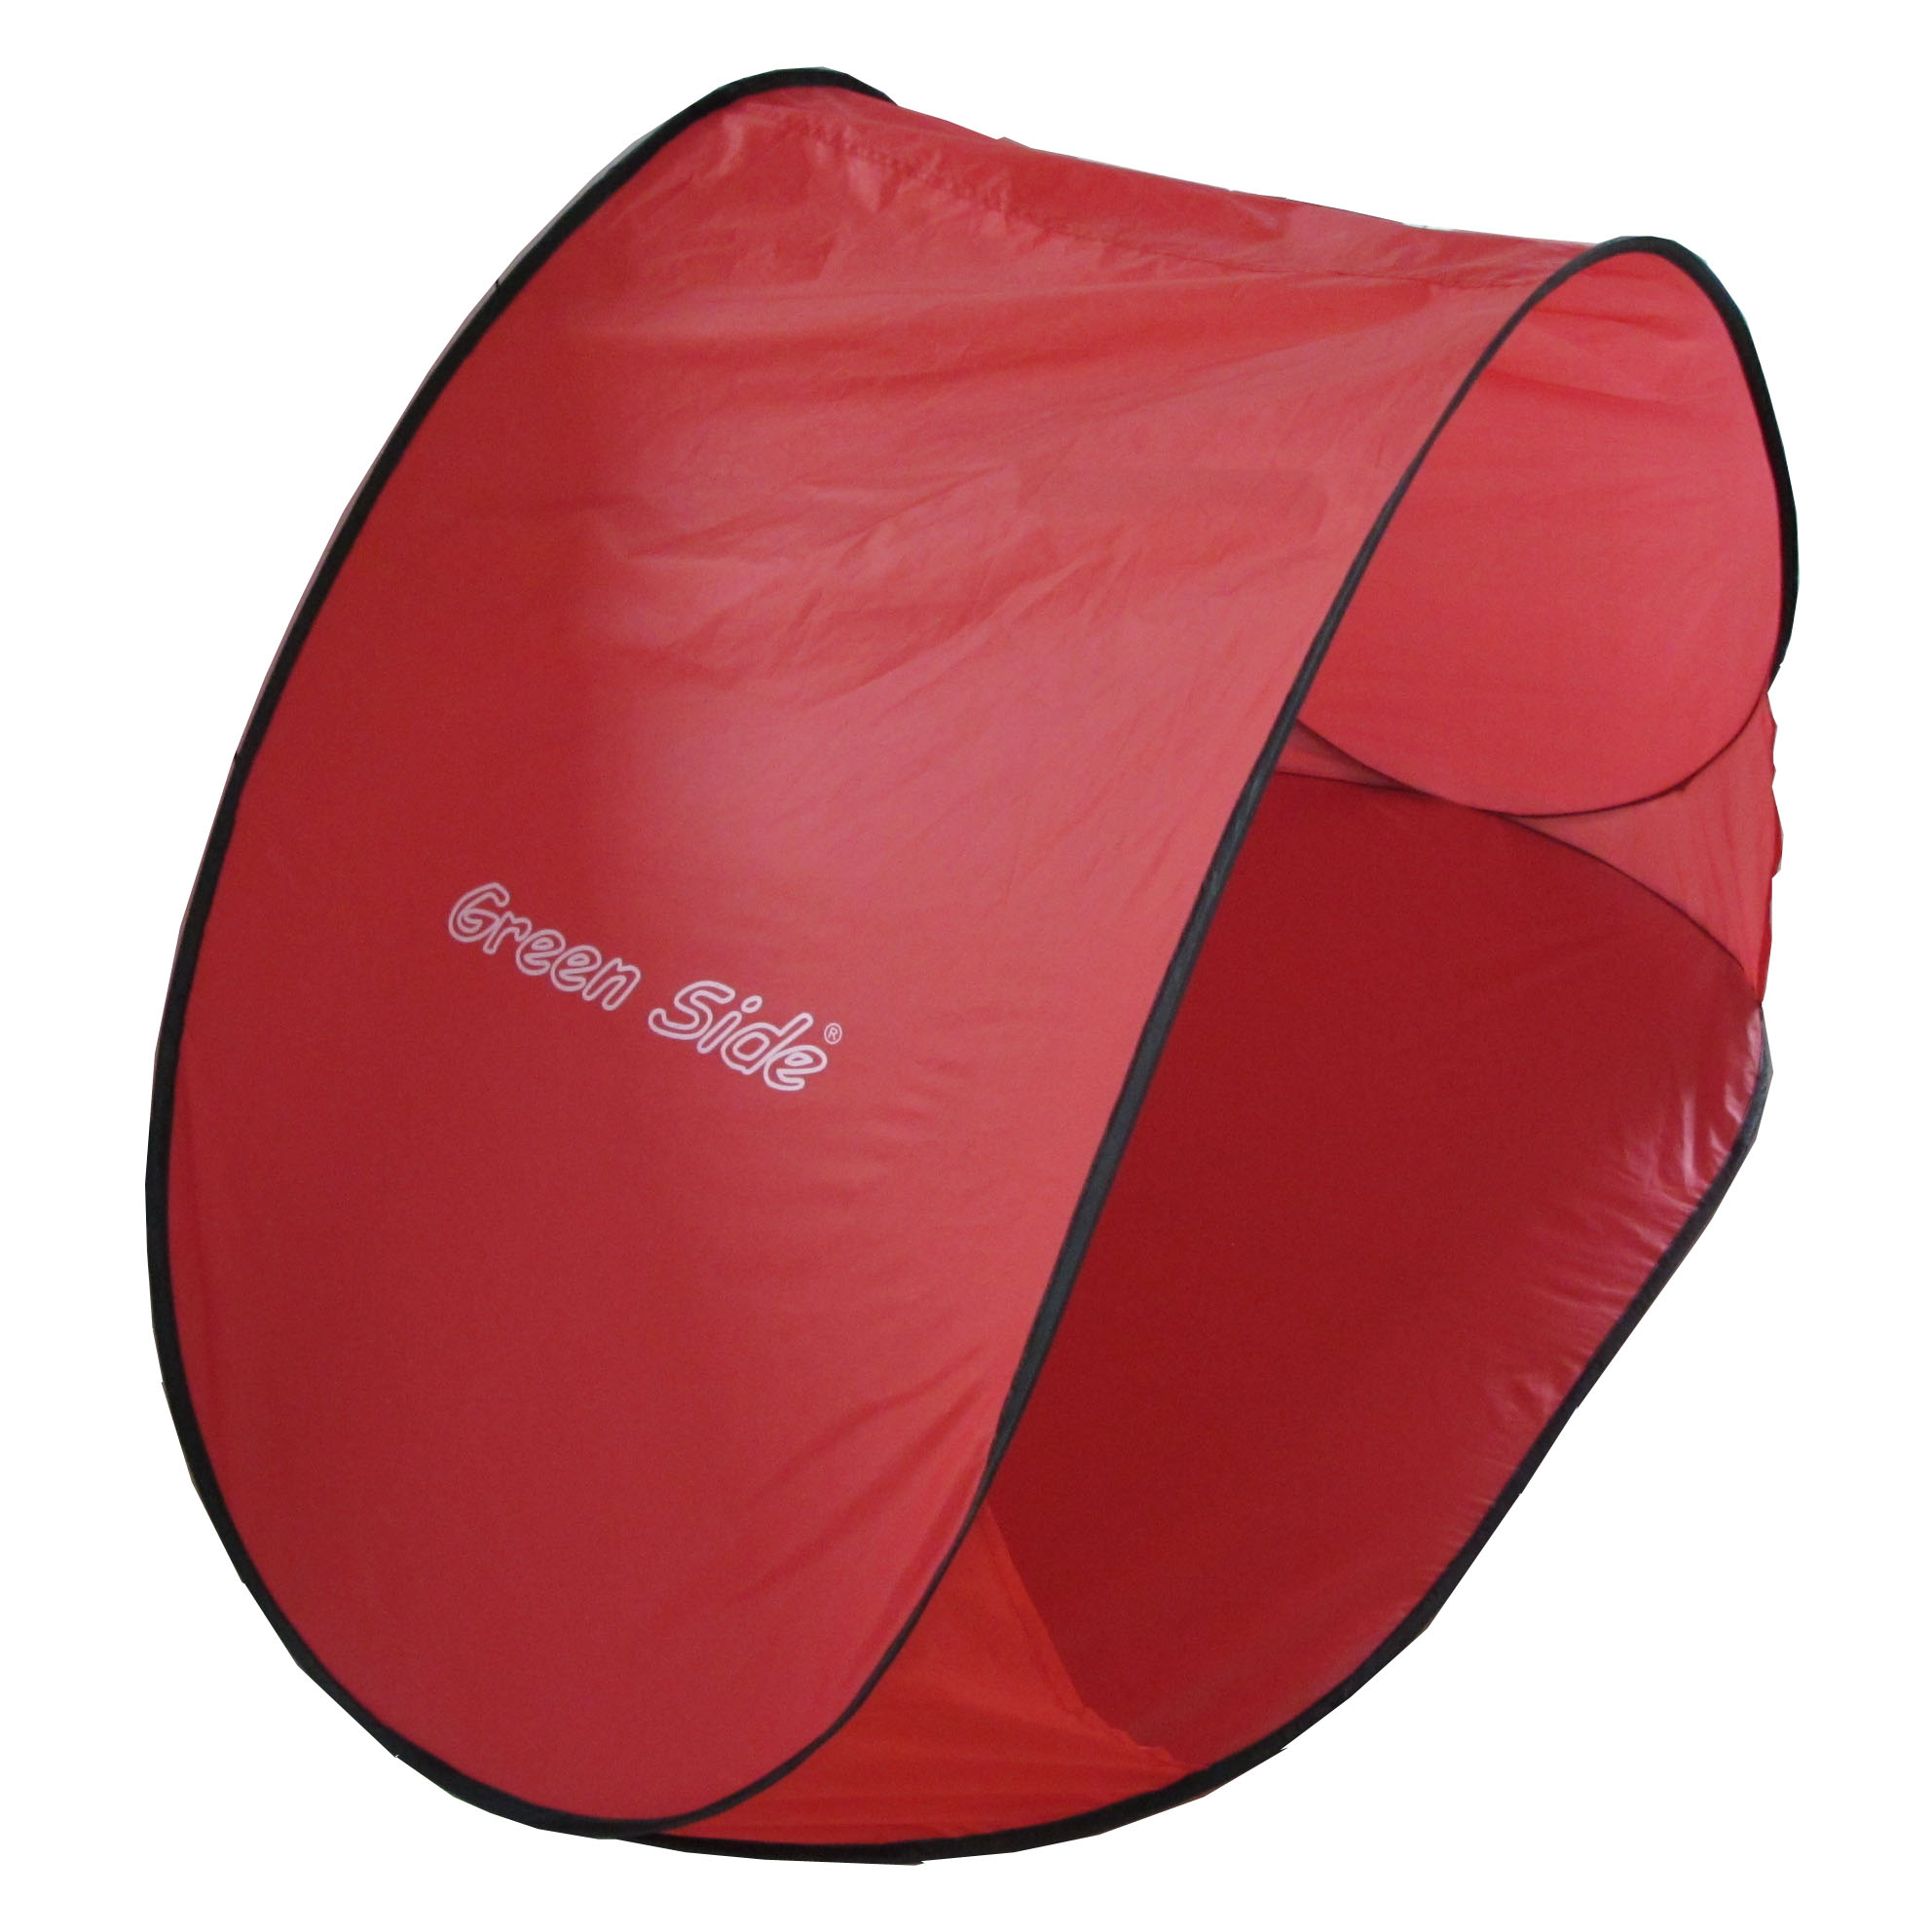 Pop Up Outdoor Tent